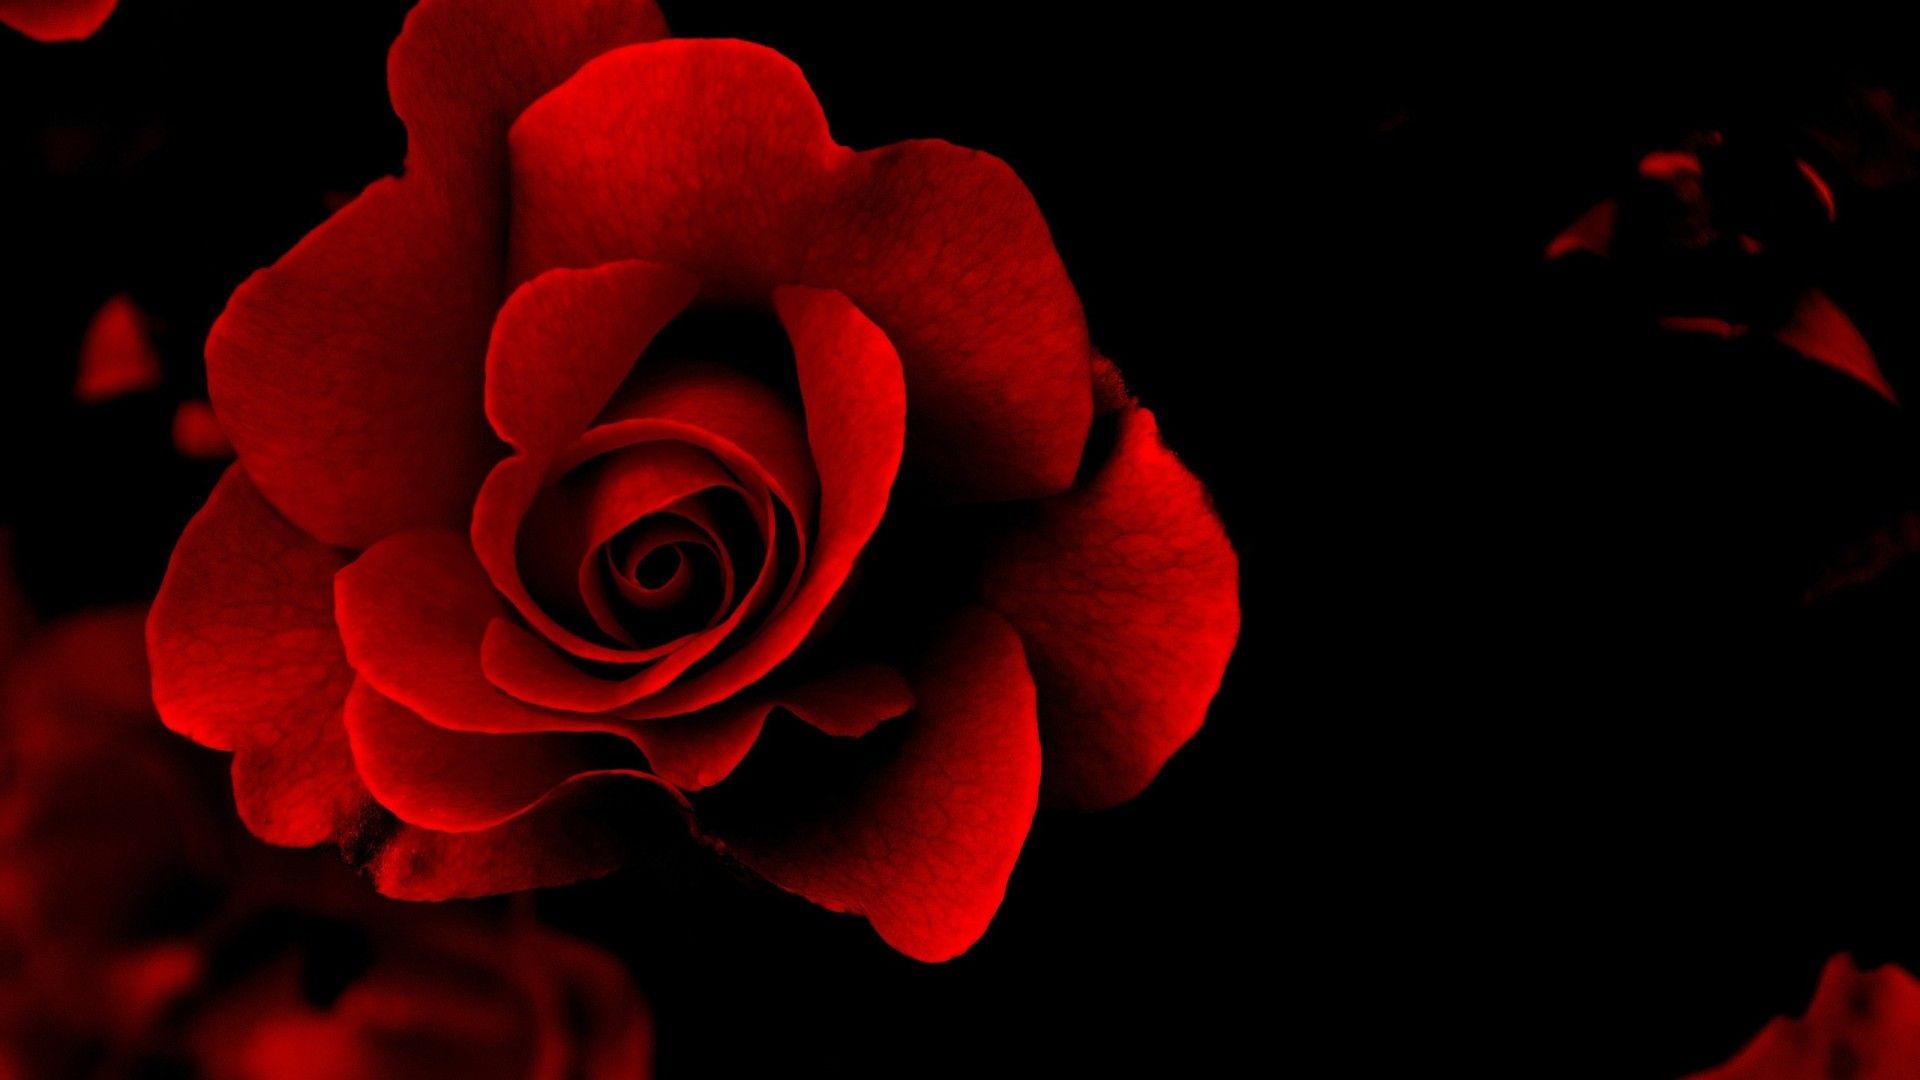 Hình nền Hoa Đỏ là một trong những lựa chọn phổ biến nhất cho máy tính để bàn của bạn. Với đầy đủ các loại hoa đỏ từ hồng đến hoa cúc, mỗi cây hoa sẽ làm cho màn hình của bạn trở nên thật sáng tạo và tươi sáng. Hãy thưởng thức bức tranh hoa đầy màu sắc này và tạo cho bạn không gian làm việc mới lạ hơn.